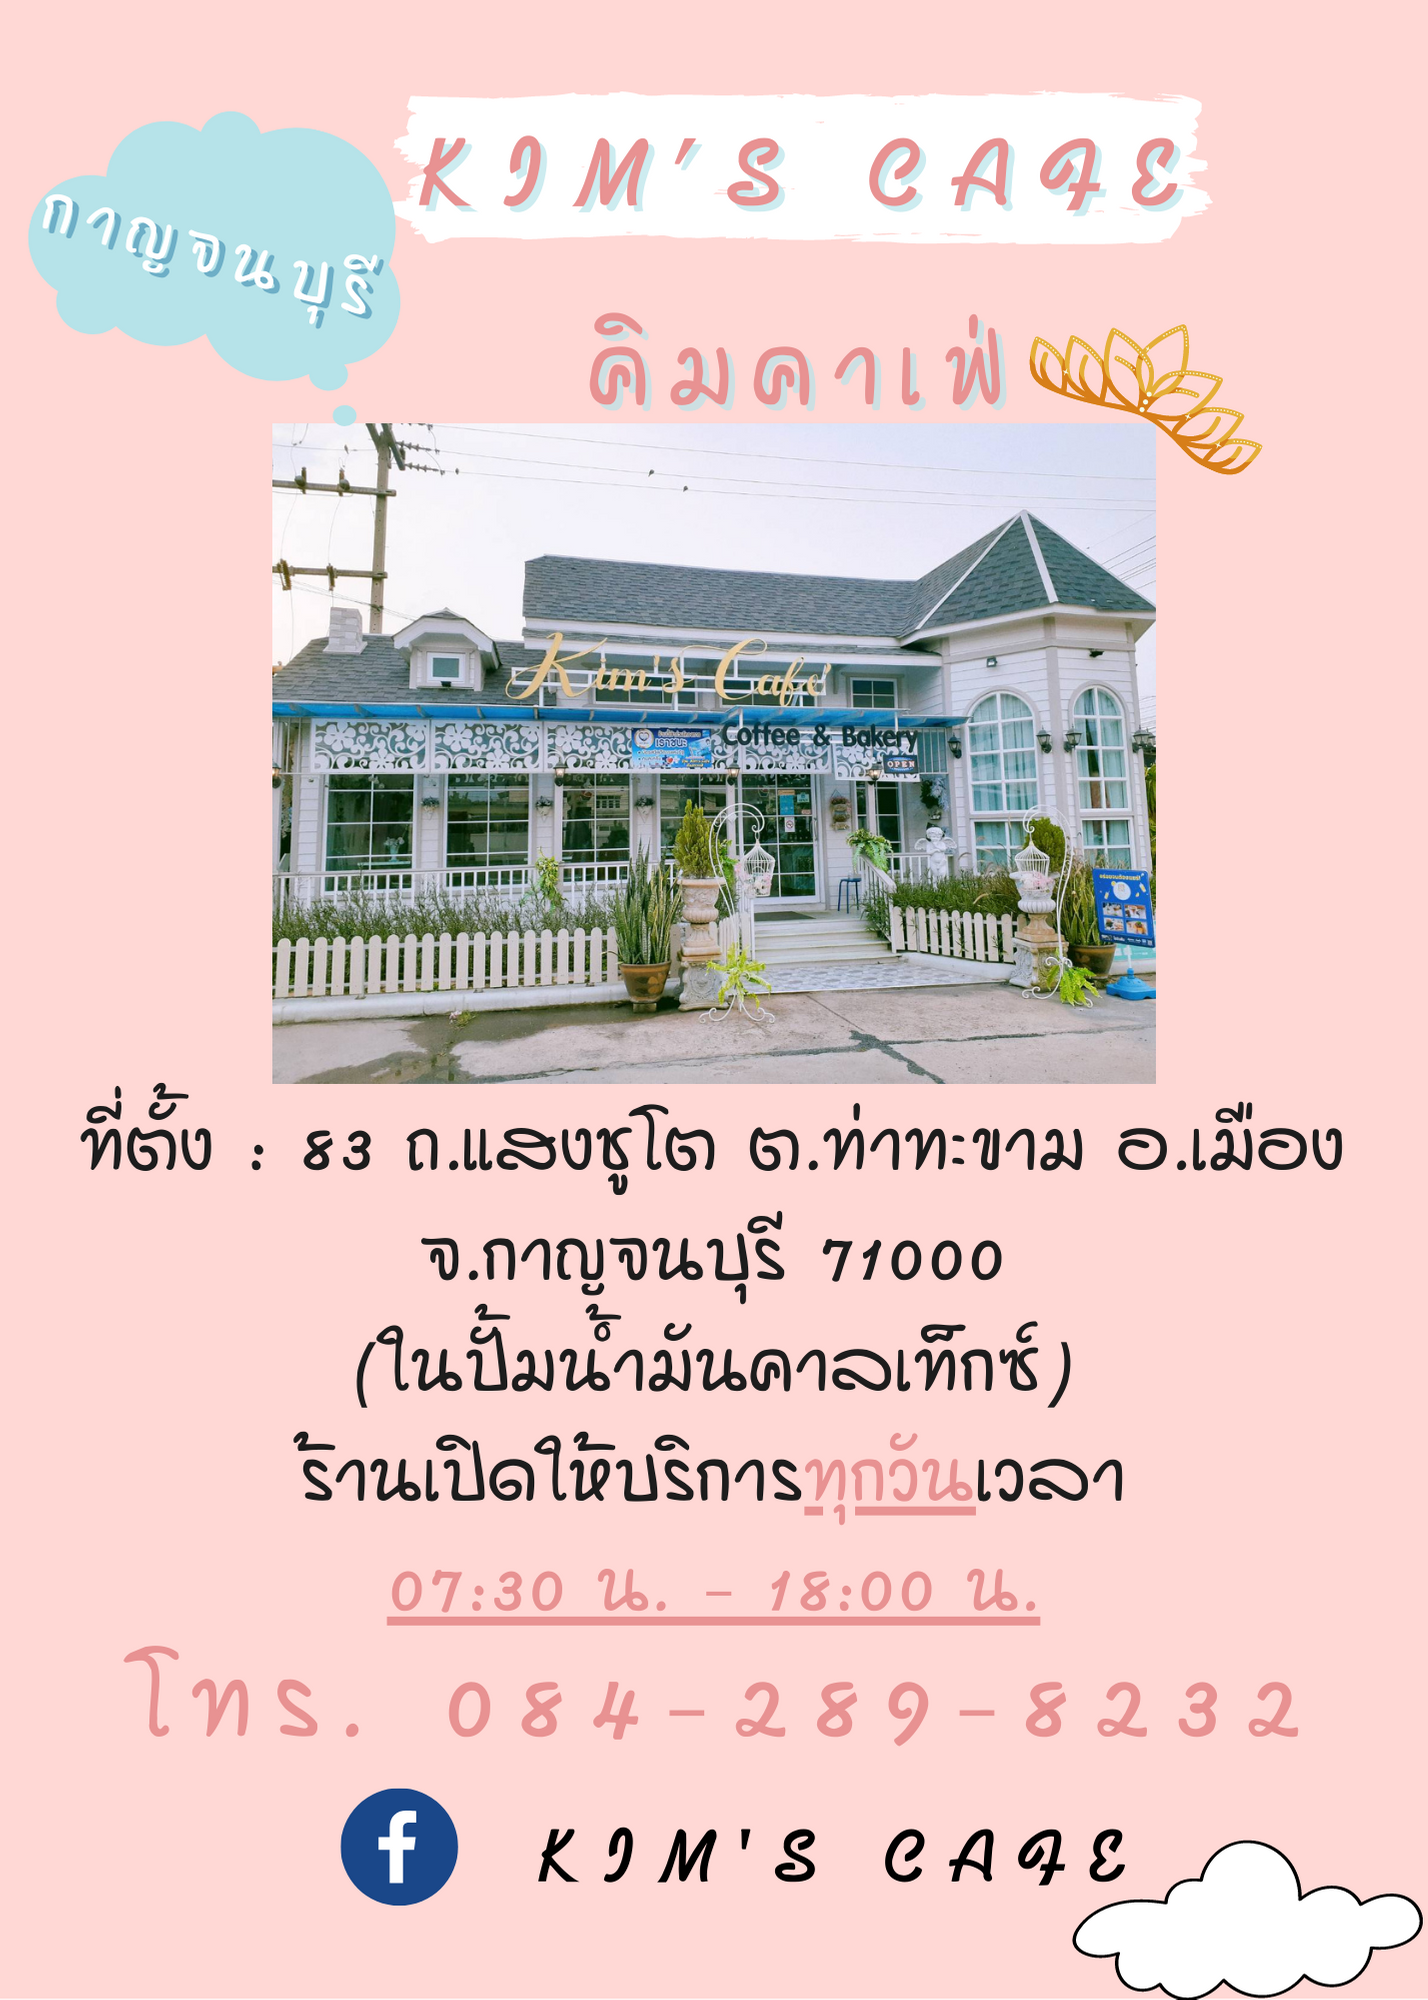 Kim's Cafe กาญจนบุรี